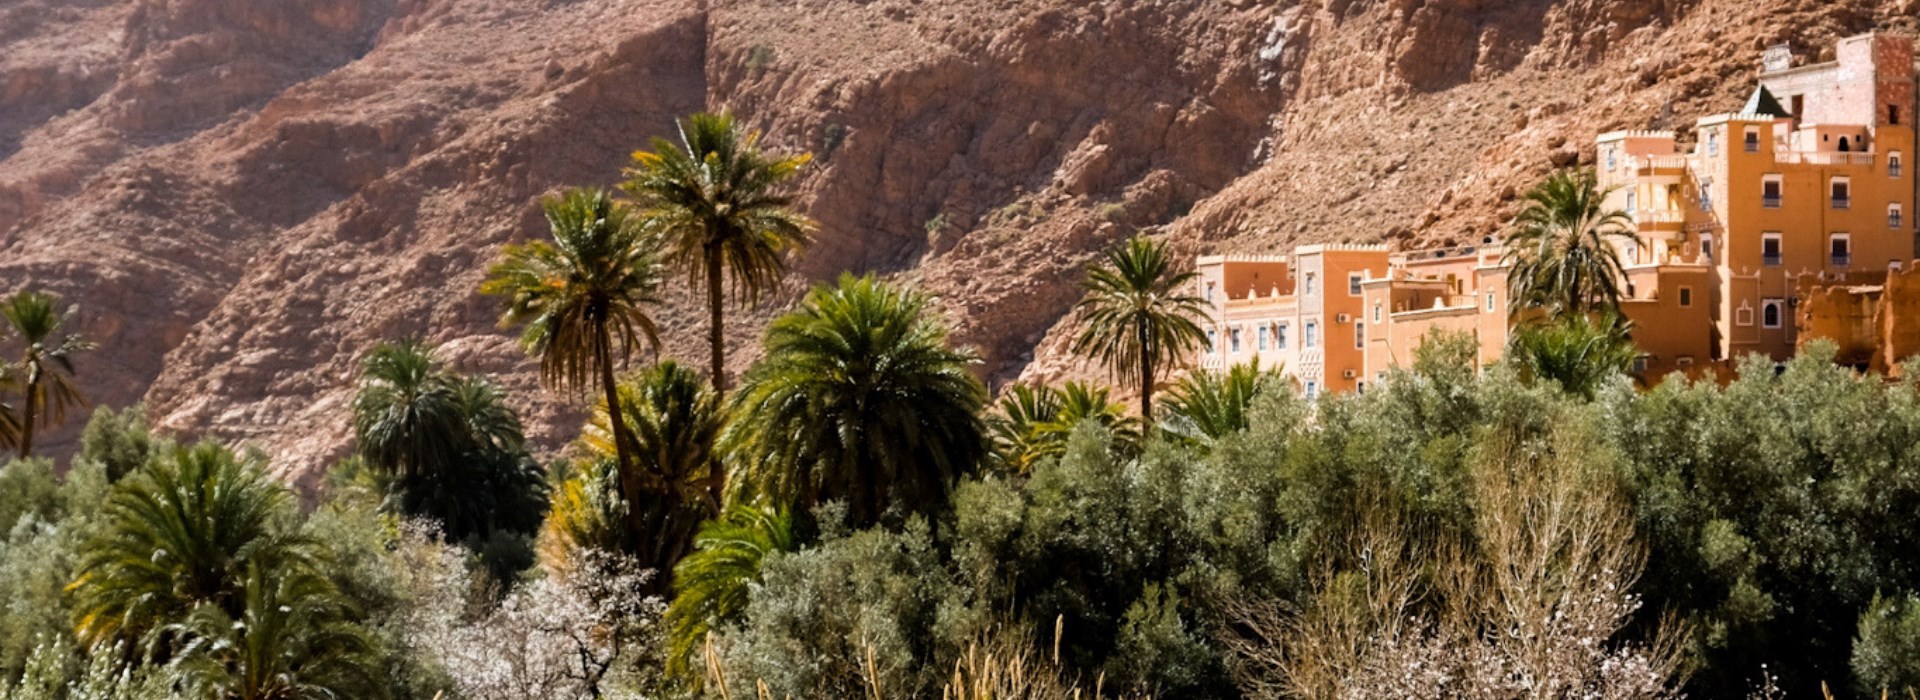 Visiter La vallée des Ait Bouguemez - Maroc